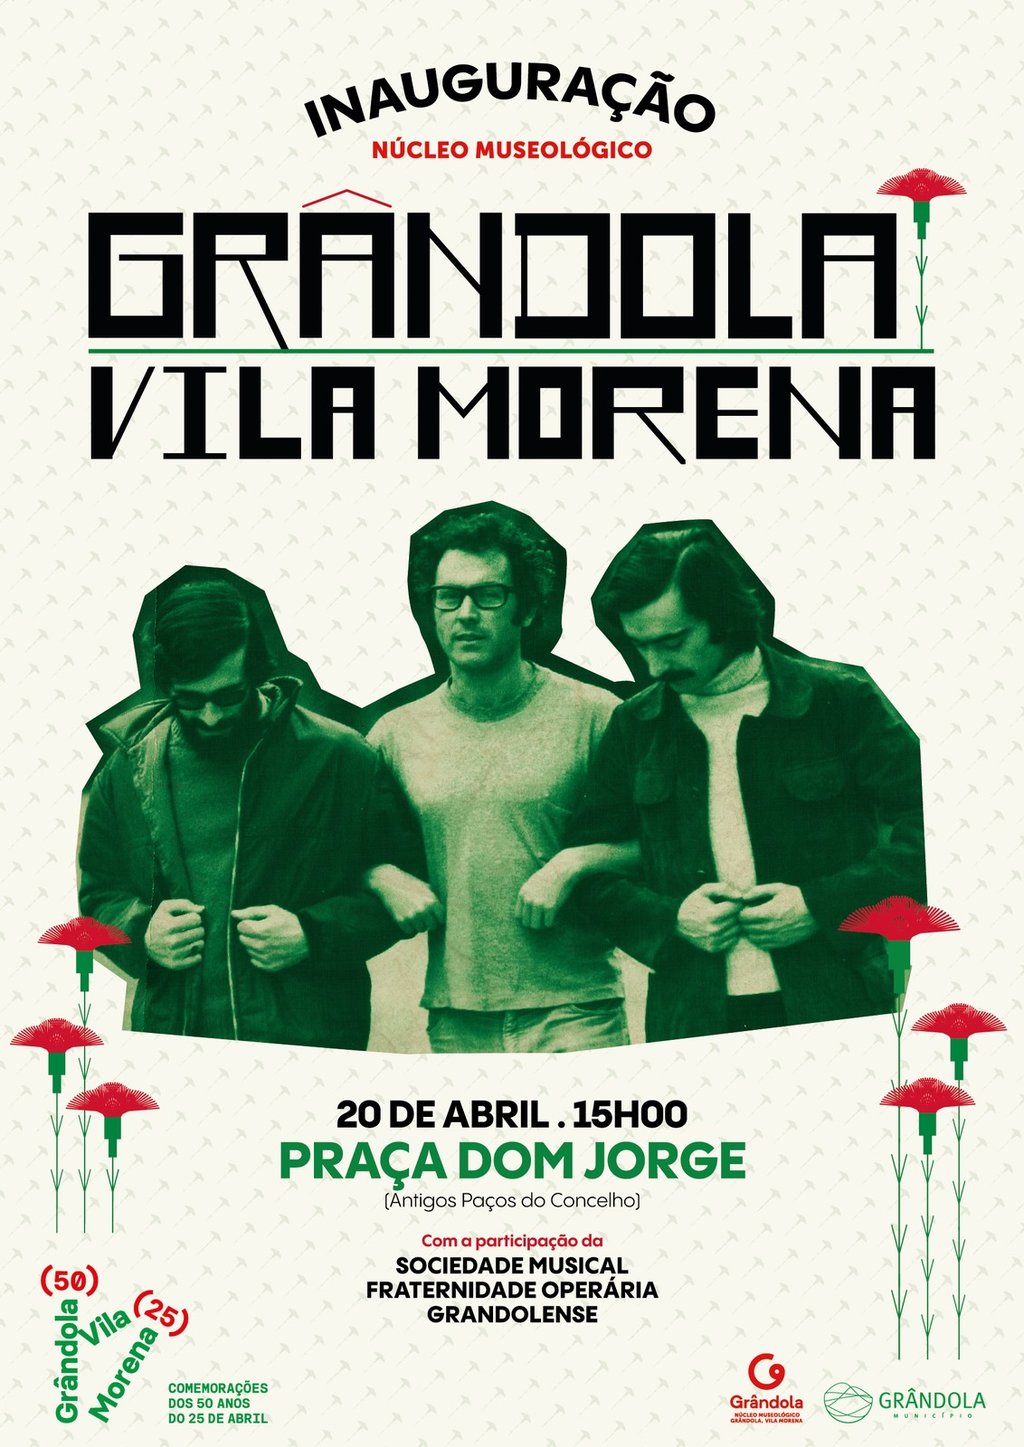 Museu Grândola, Vila Morena: Uma viagem interativa pela história da canção que marcou o 25 de Abril